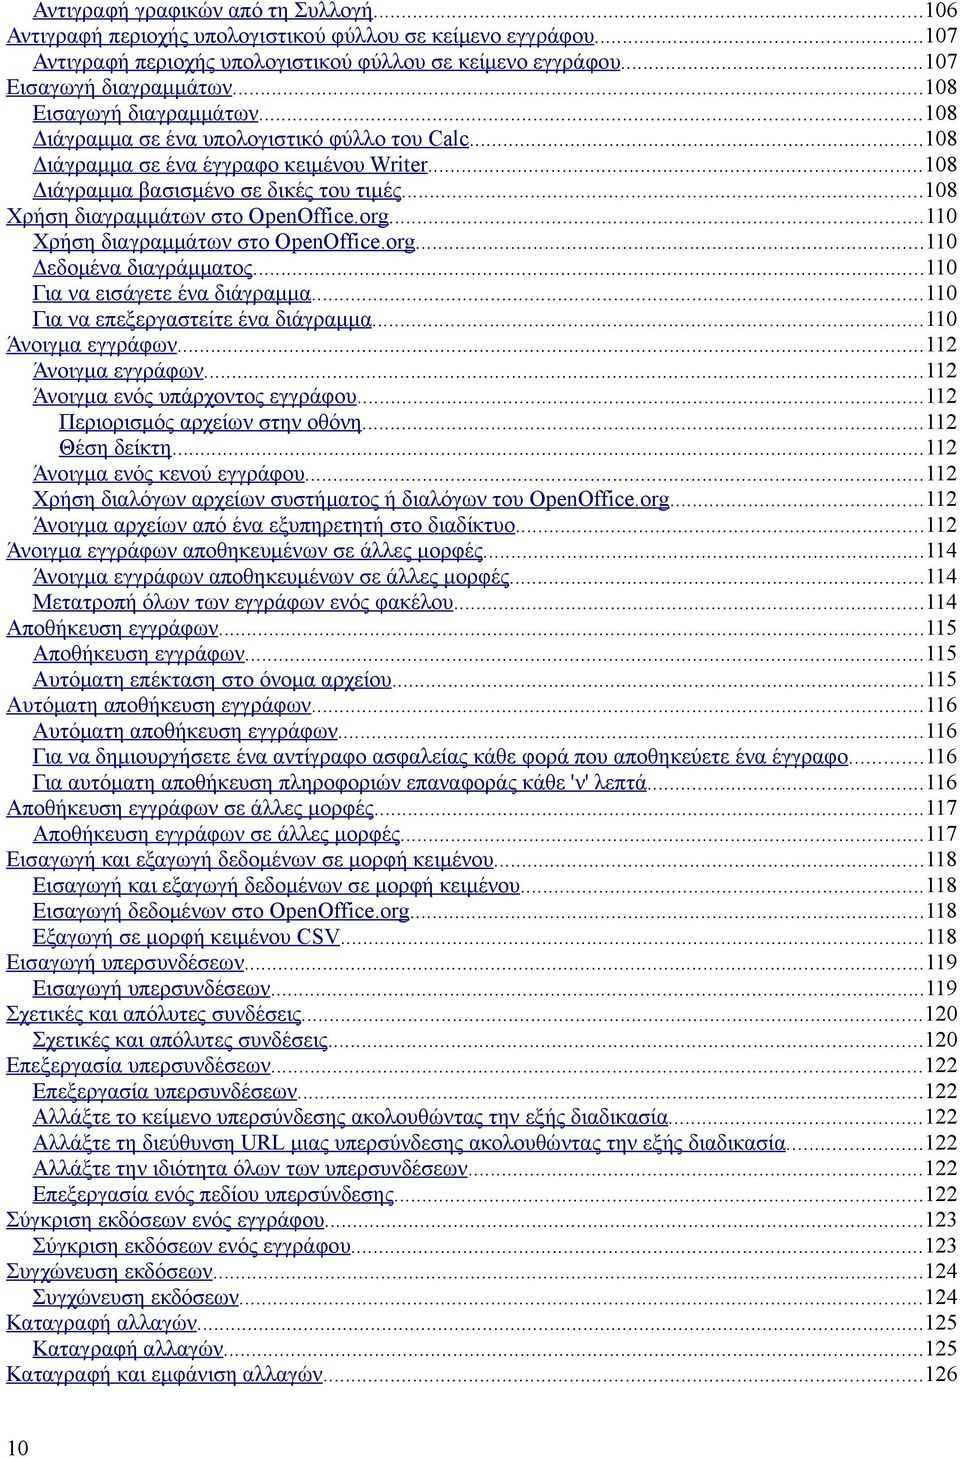 ..108 Χρήση διαγραμμάτων στο OpenOffice.org...110 Χρήση διαγραμμάτων στο OpenOffice.org...110 Δεδομένα διαγράμματος...110 Για να εισάγετε ένα διάγραμμα...110 Για να επεξεργαστείτε ένα διάγραμμα.